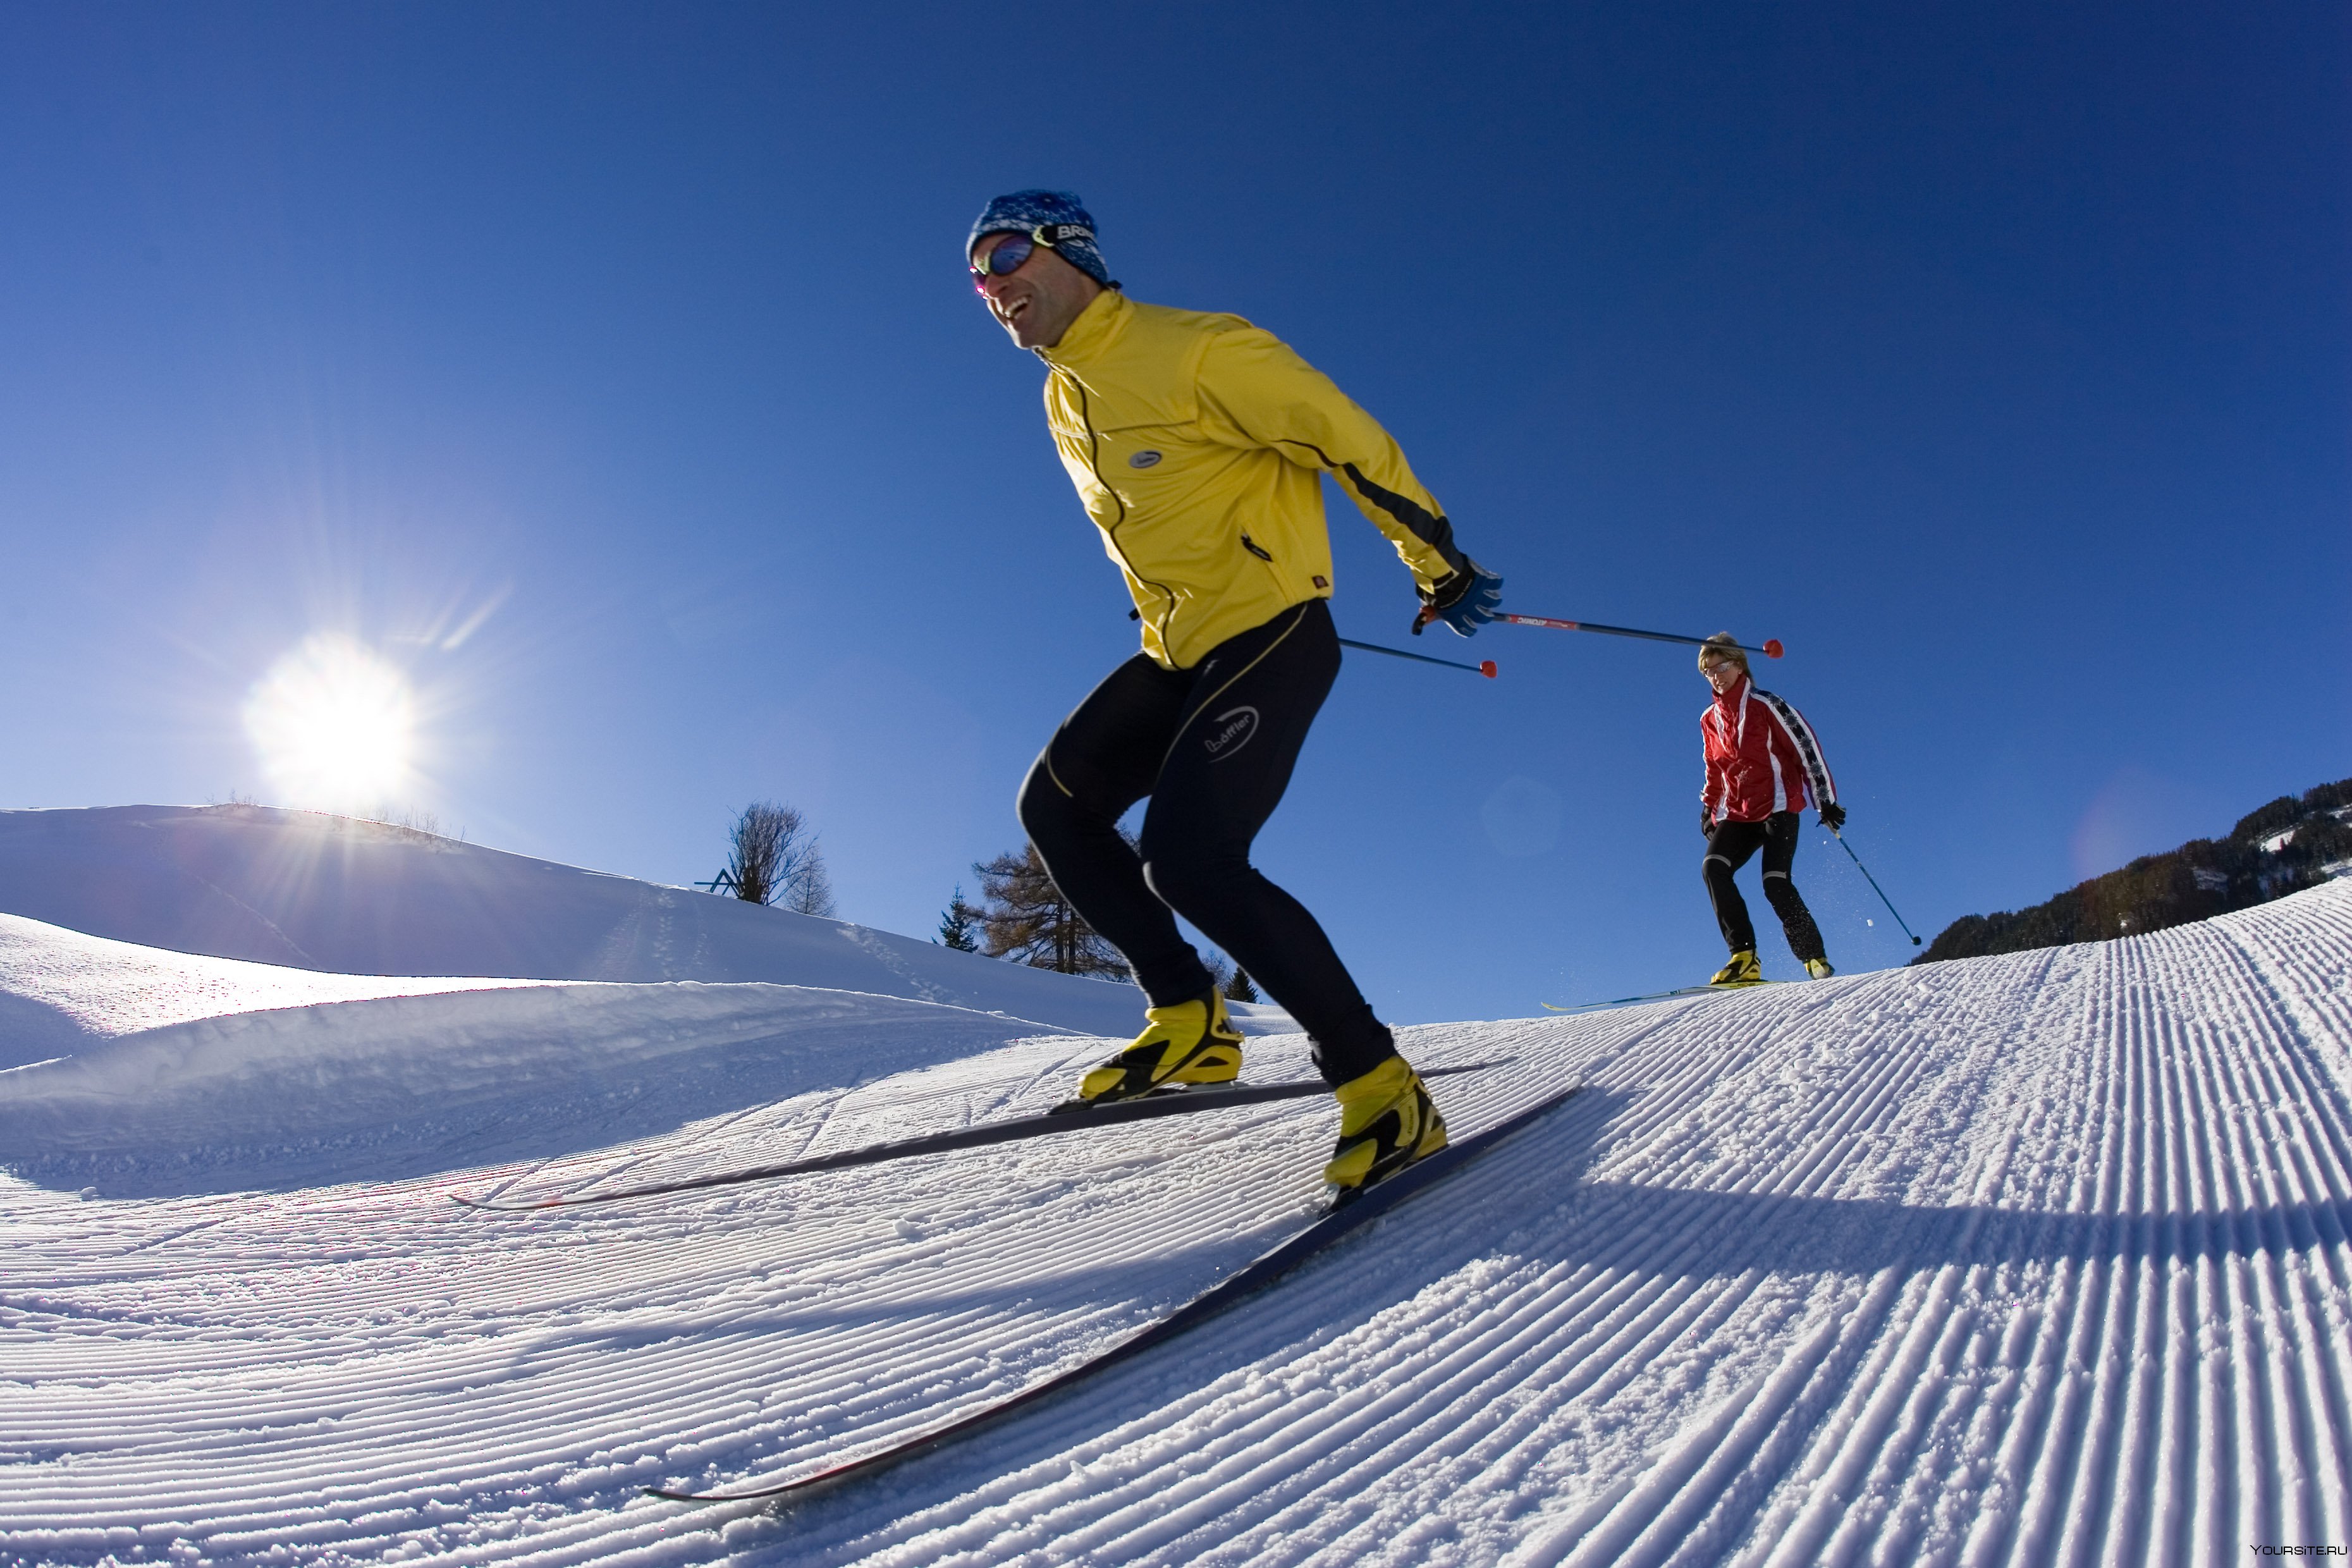 Skiing where. Лыжи беговые для конькового хода. Катание на горных лыжах. Катания на беговых лыжах. Катается на лыжах беговых.